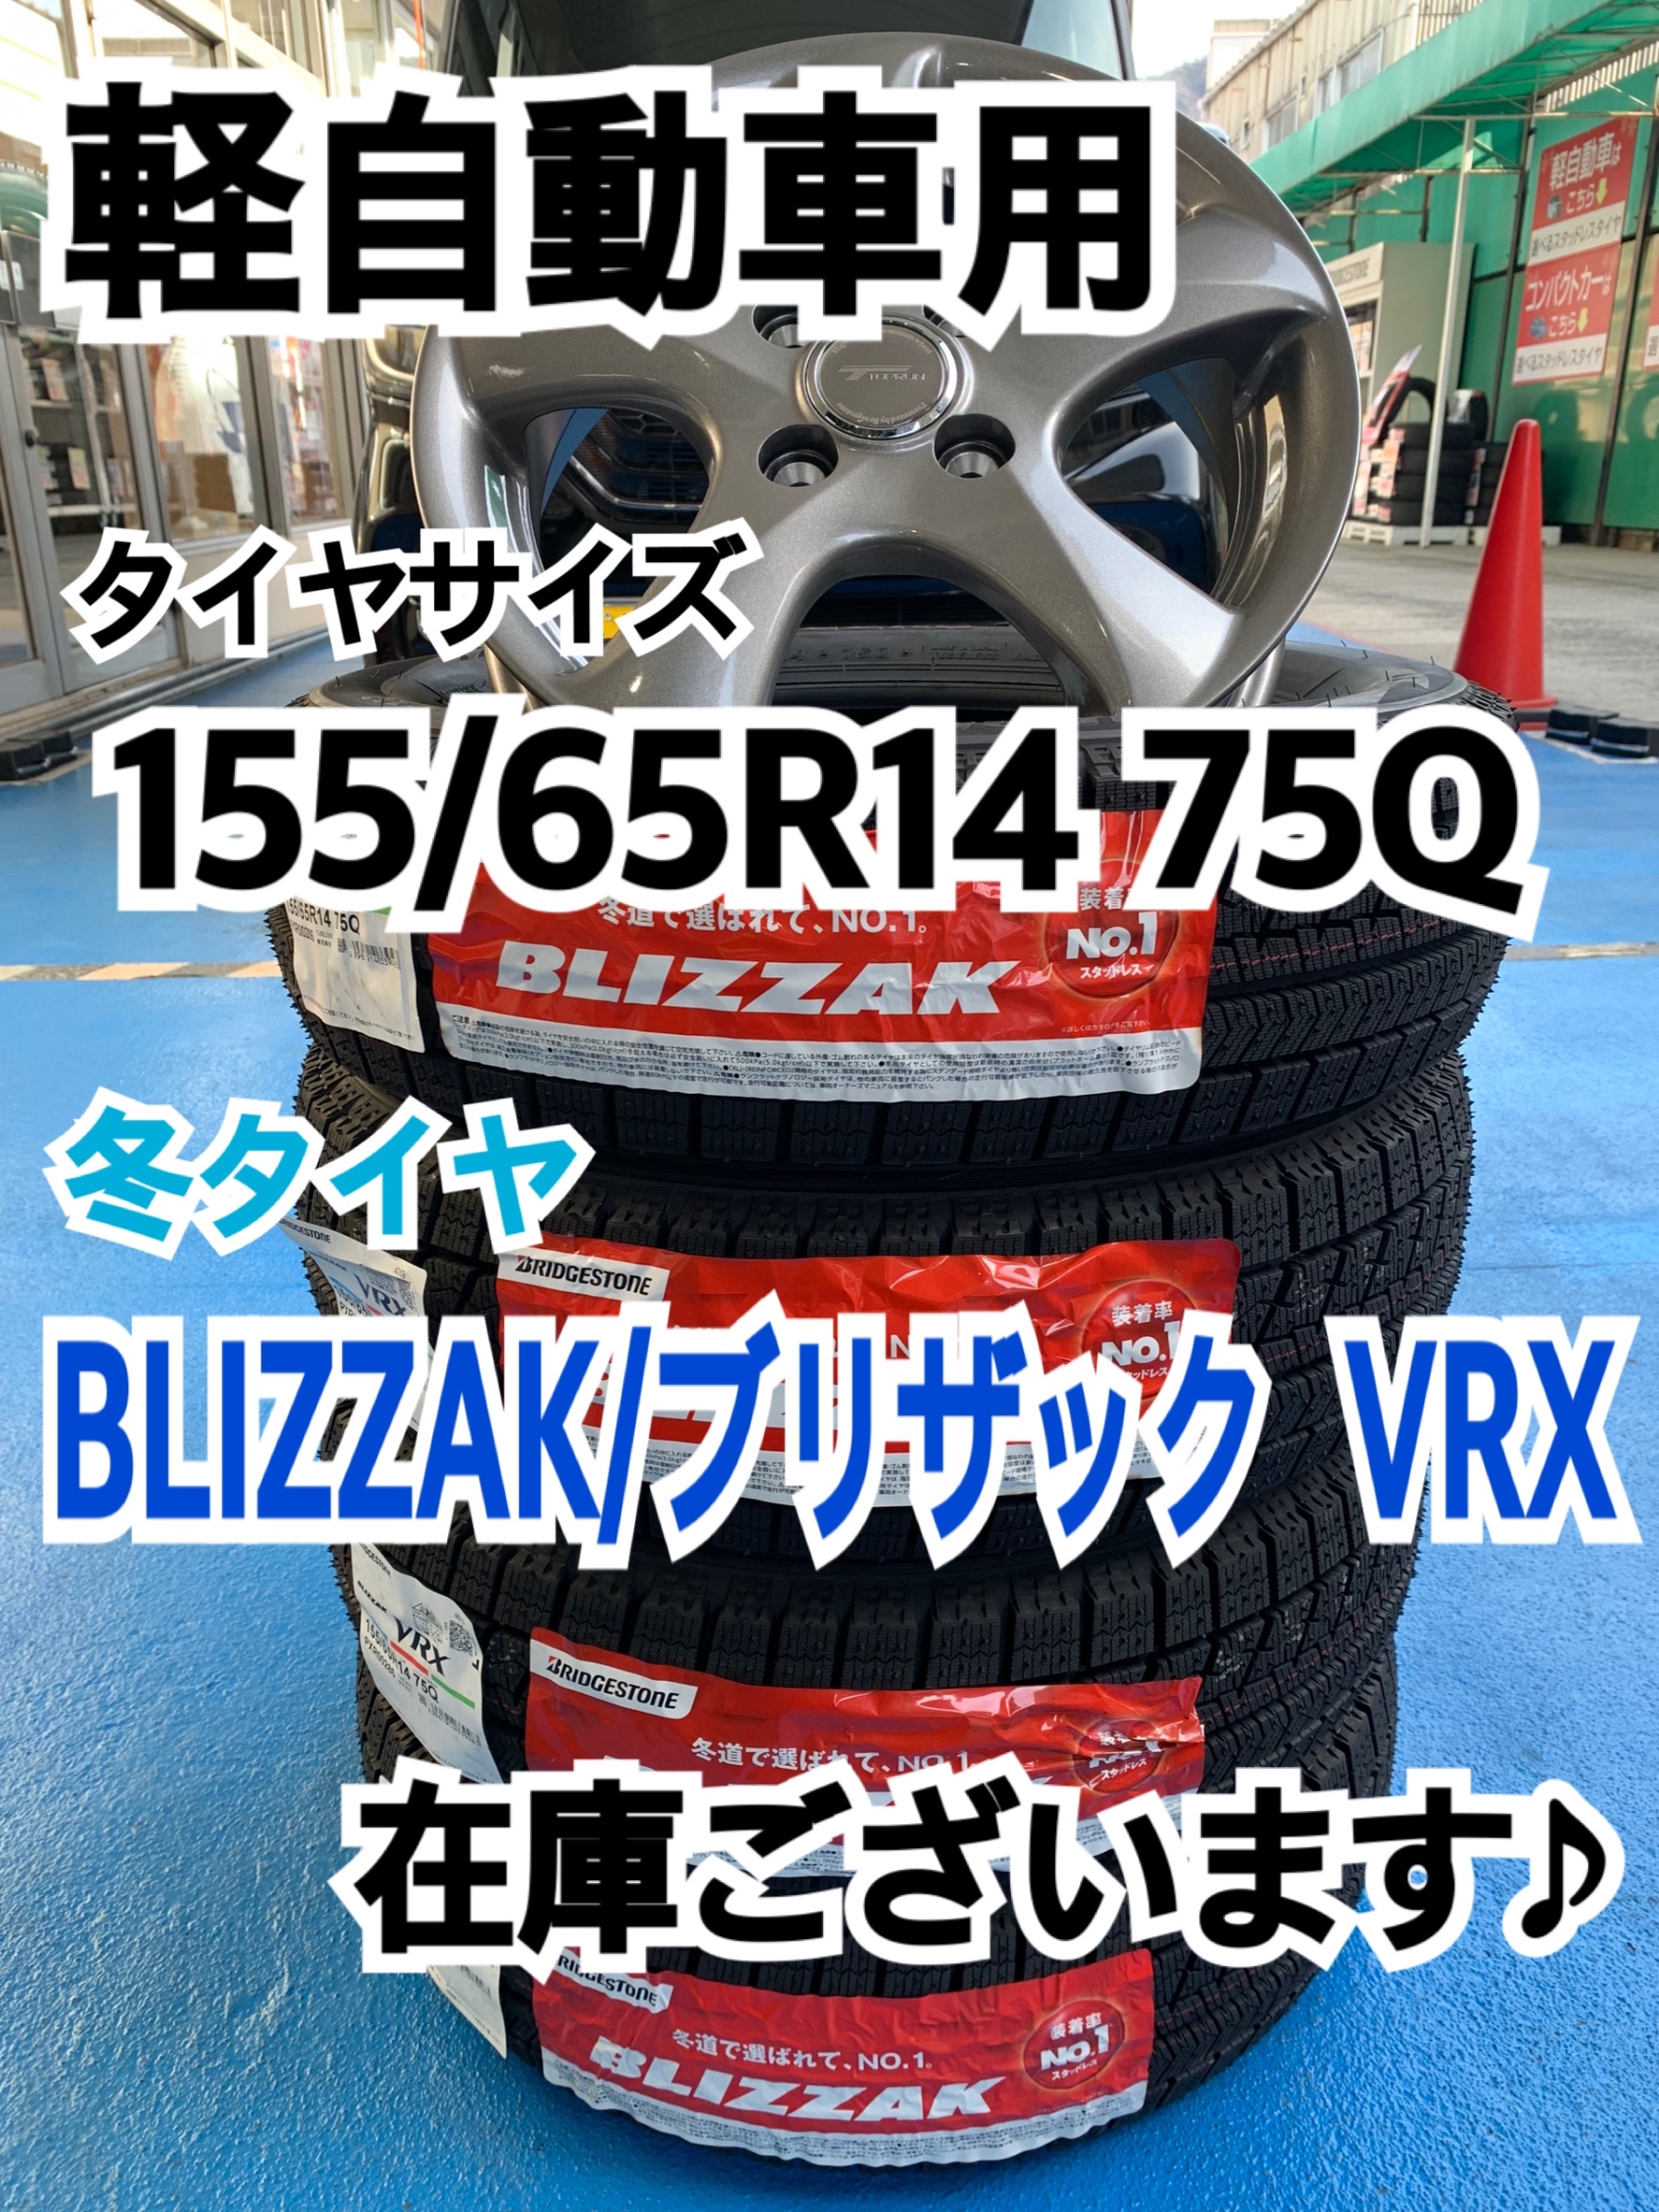 タイヤサイズ:155/65R14】軽自動車用 冬タイヤ BLIZZAK/ブリザック VRX